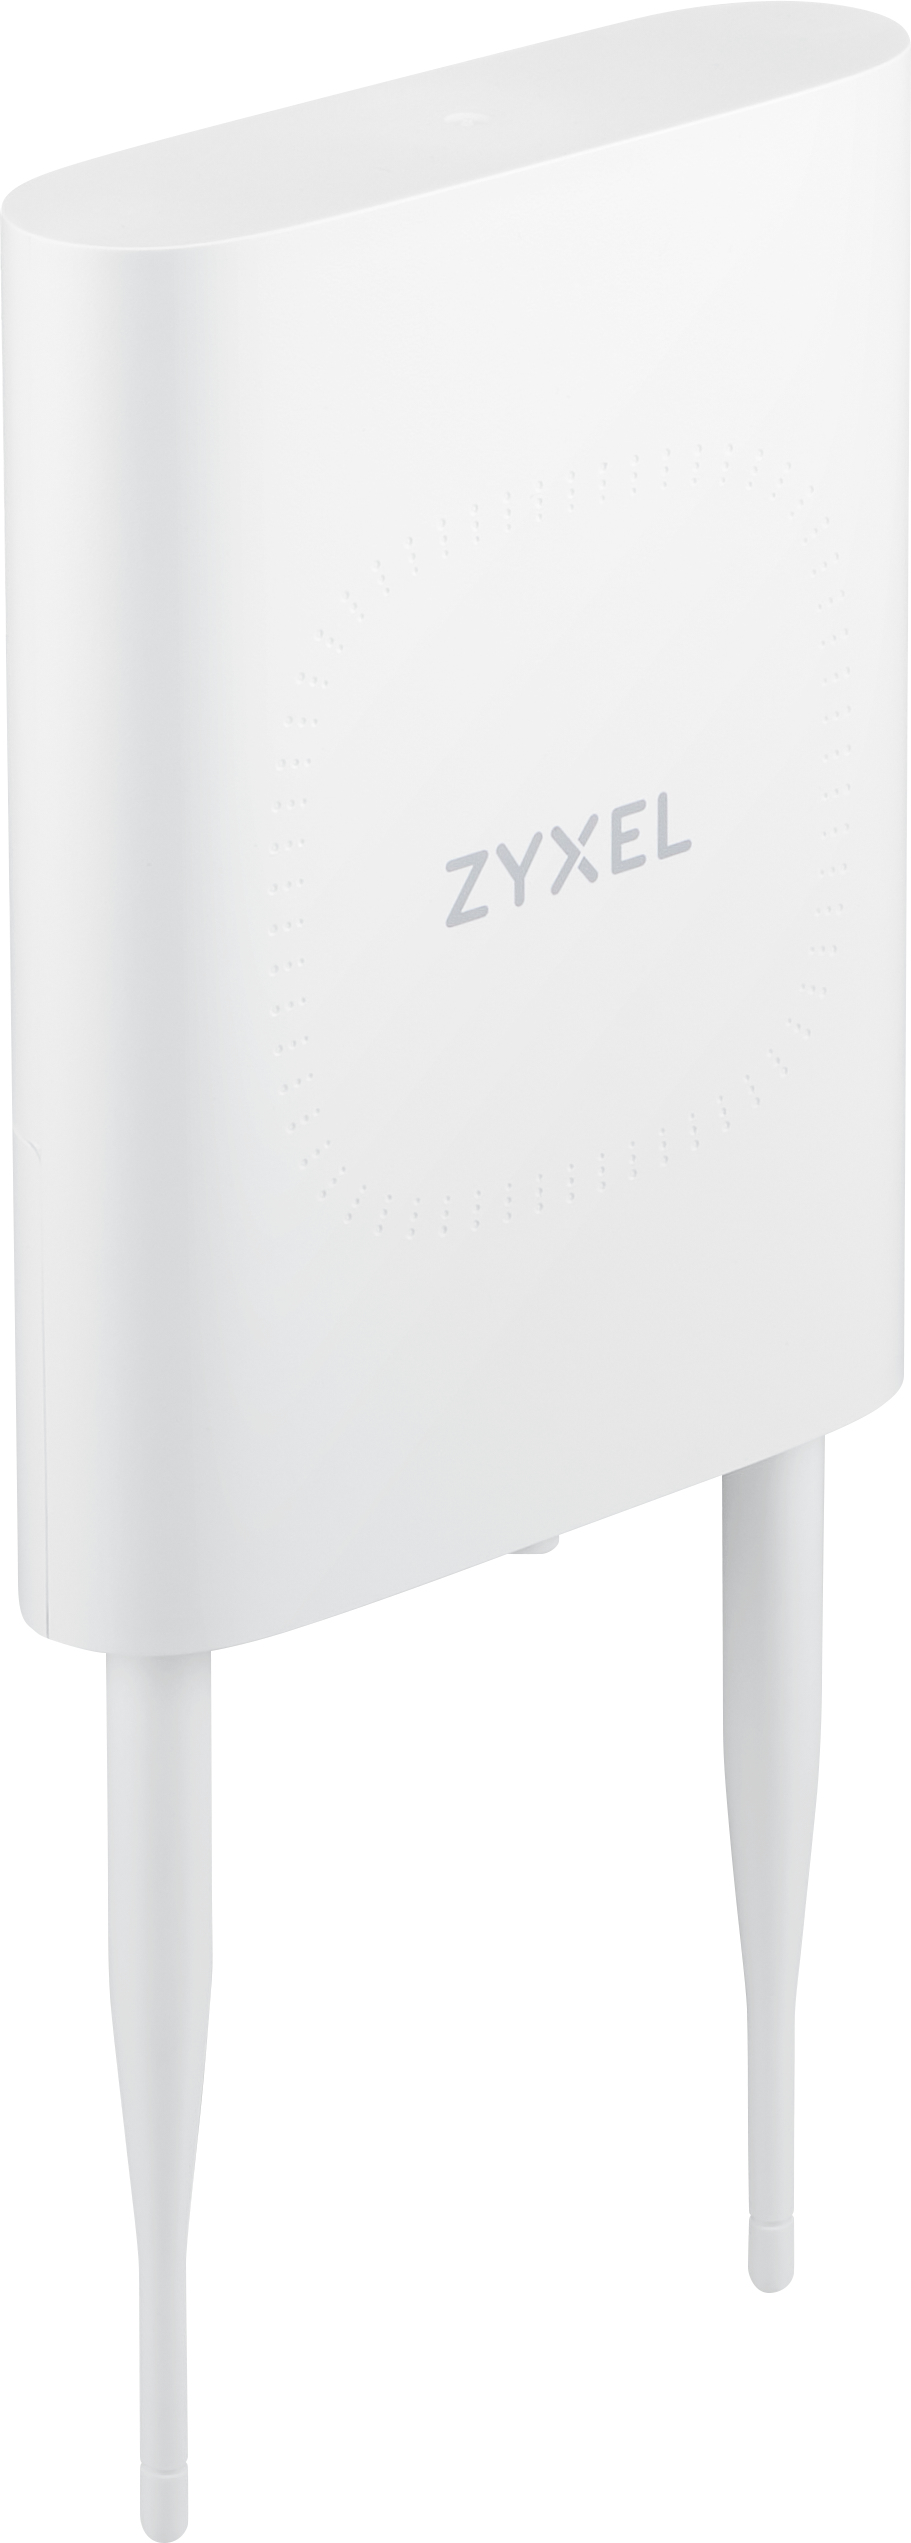 ZyXEL NWA55AXE - Accesspoint - Wi-Fi 6 - 2.4 GHz, 5 GHz